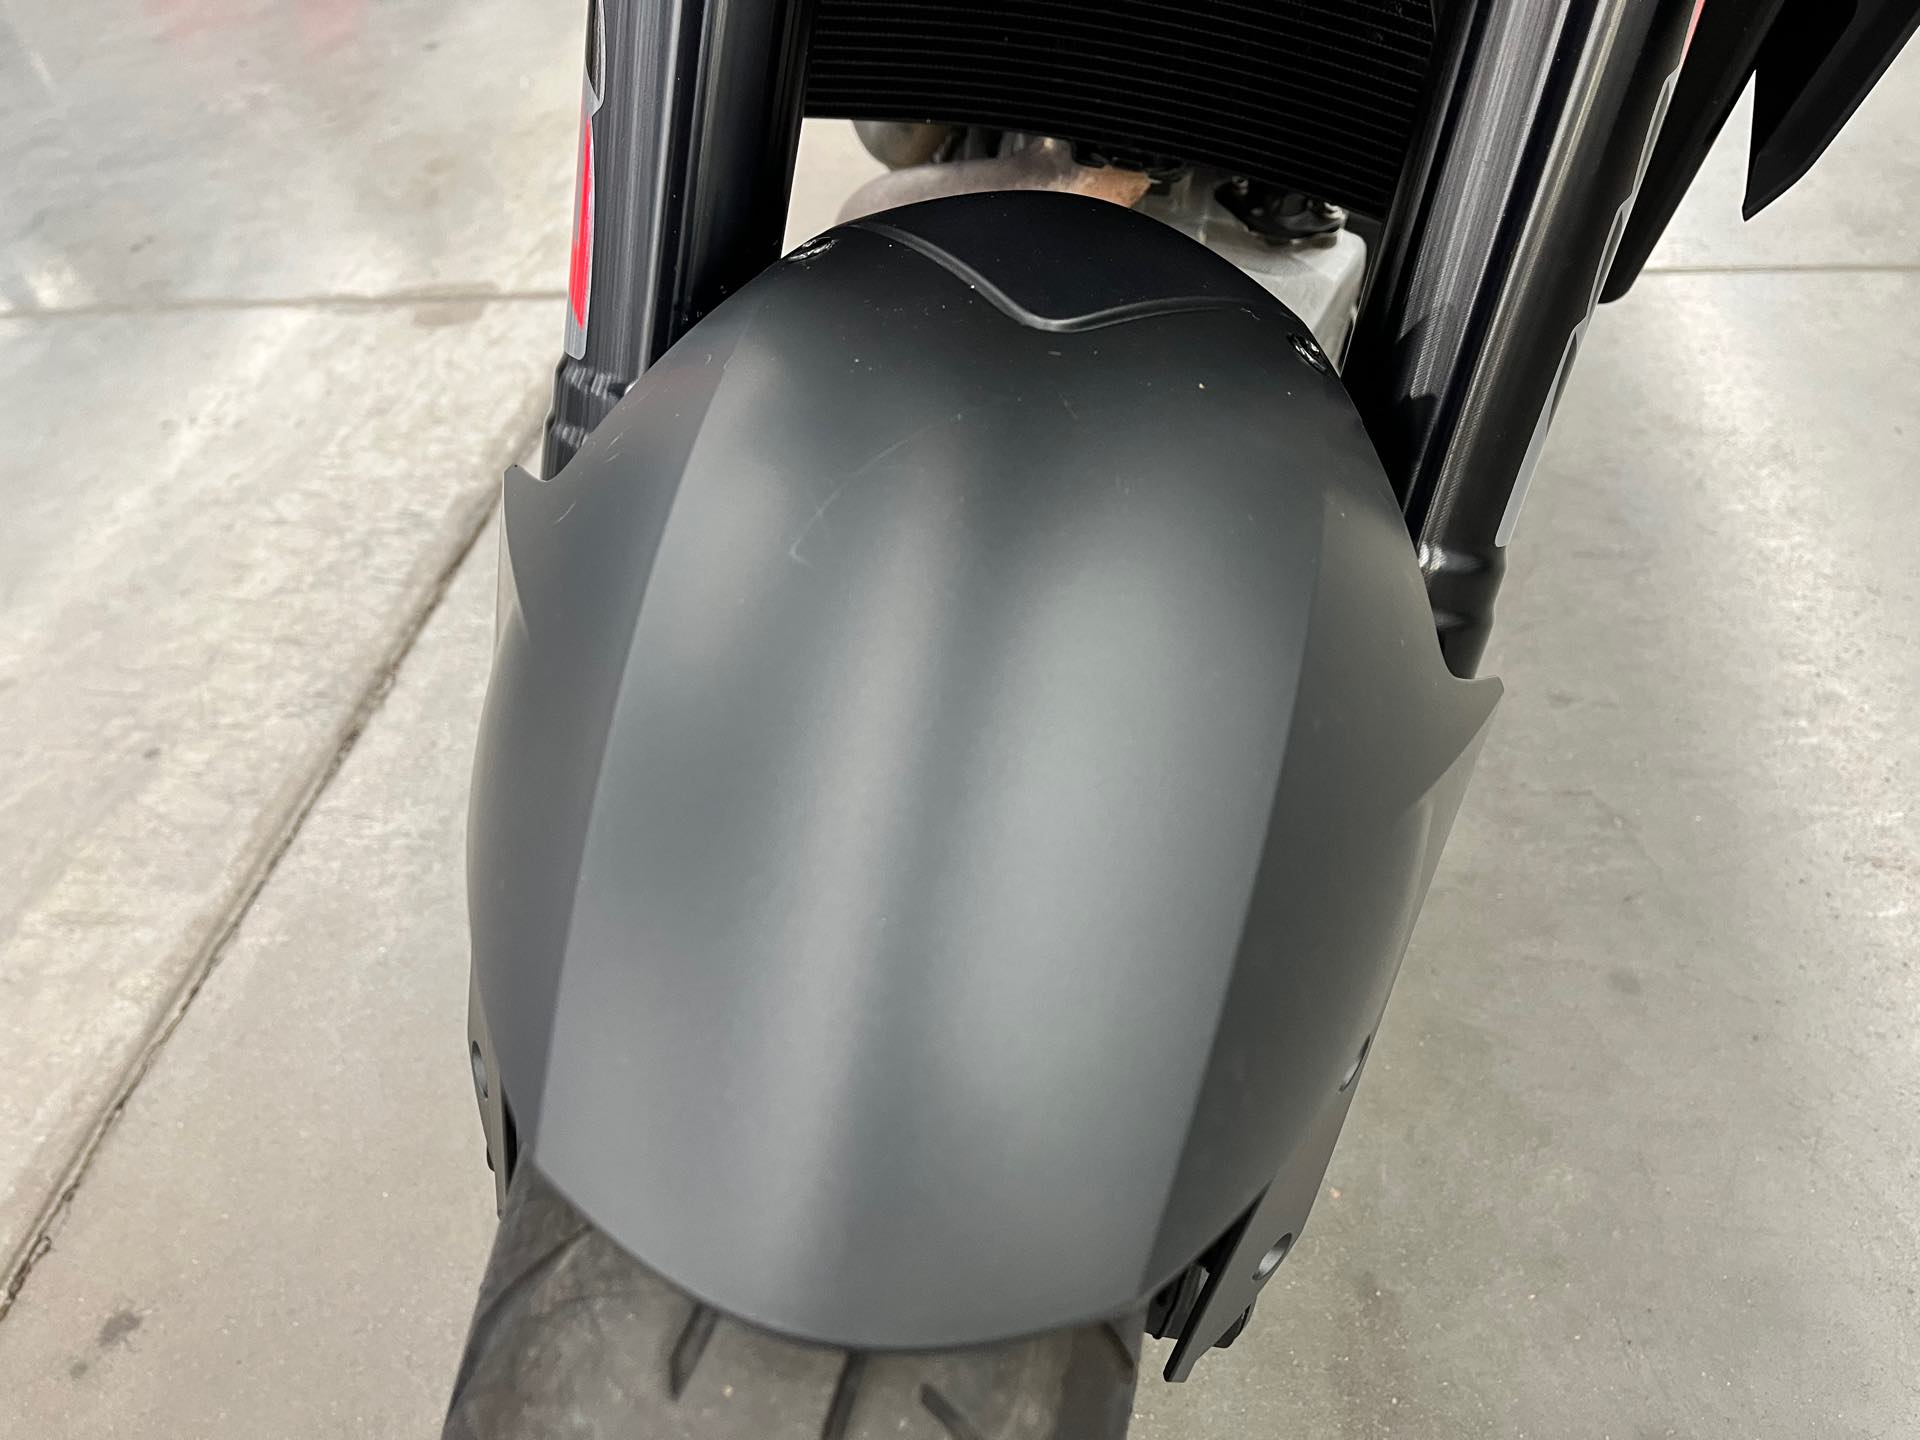 2019 KTM Super Duke 1290 R at Aces Motorcycles - Denver